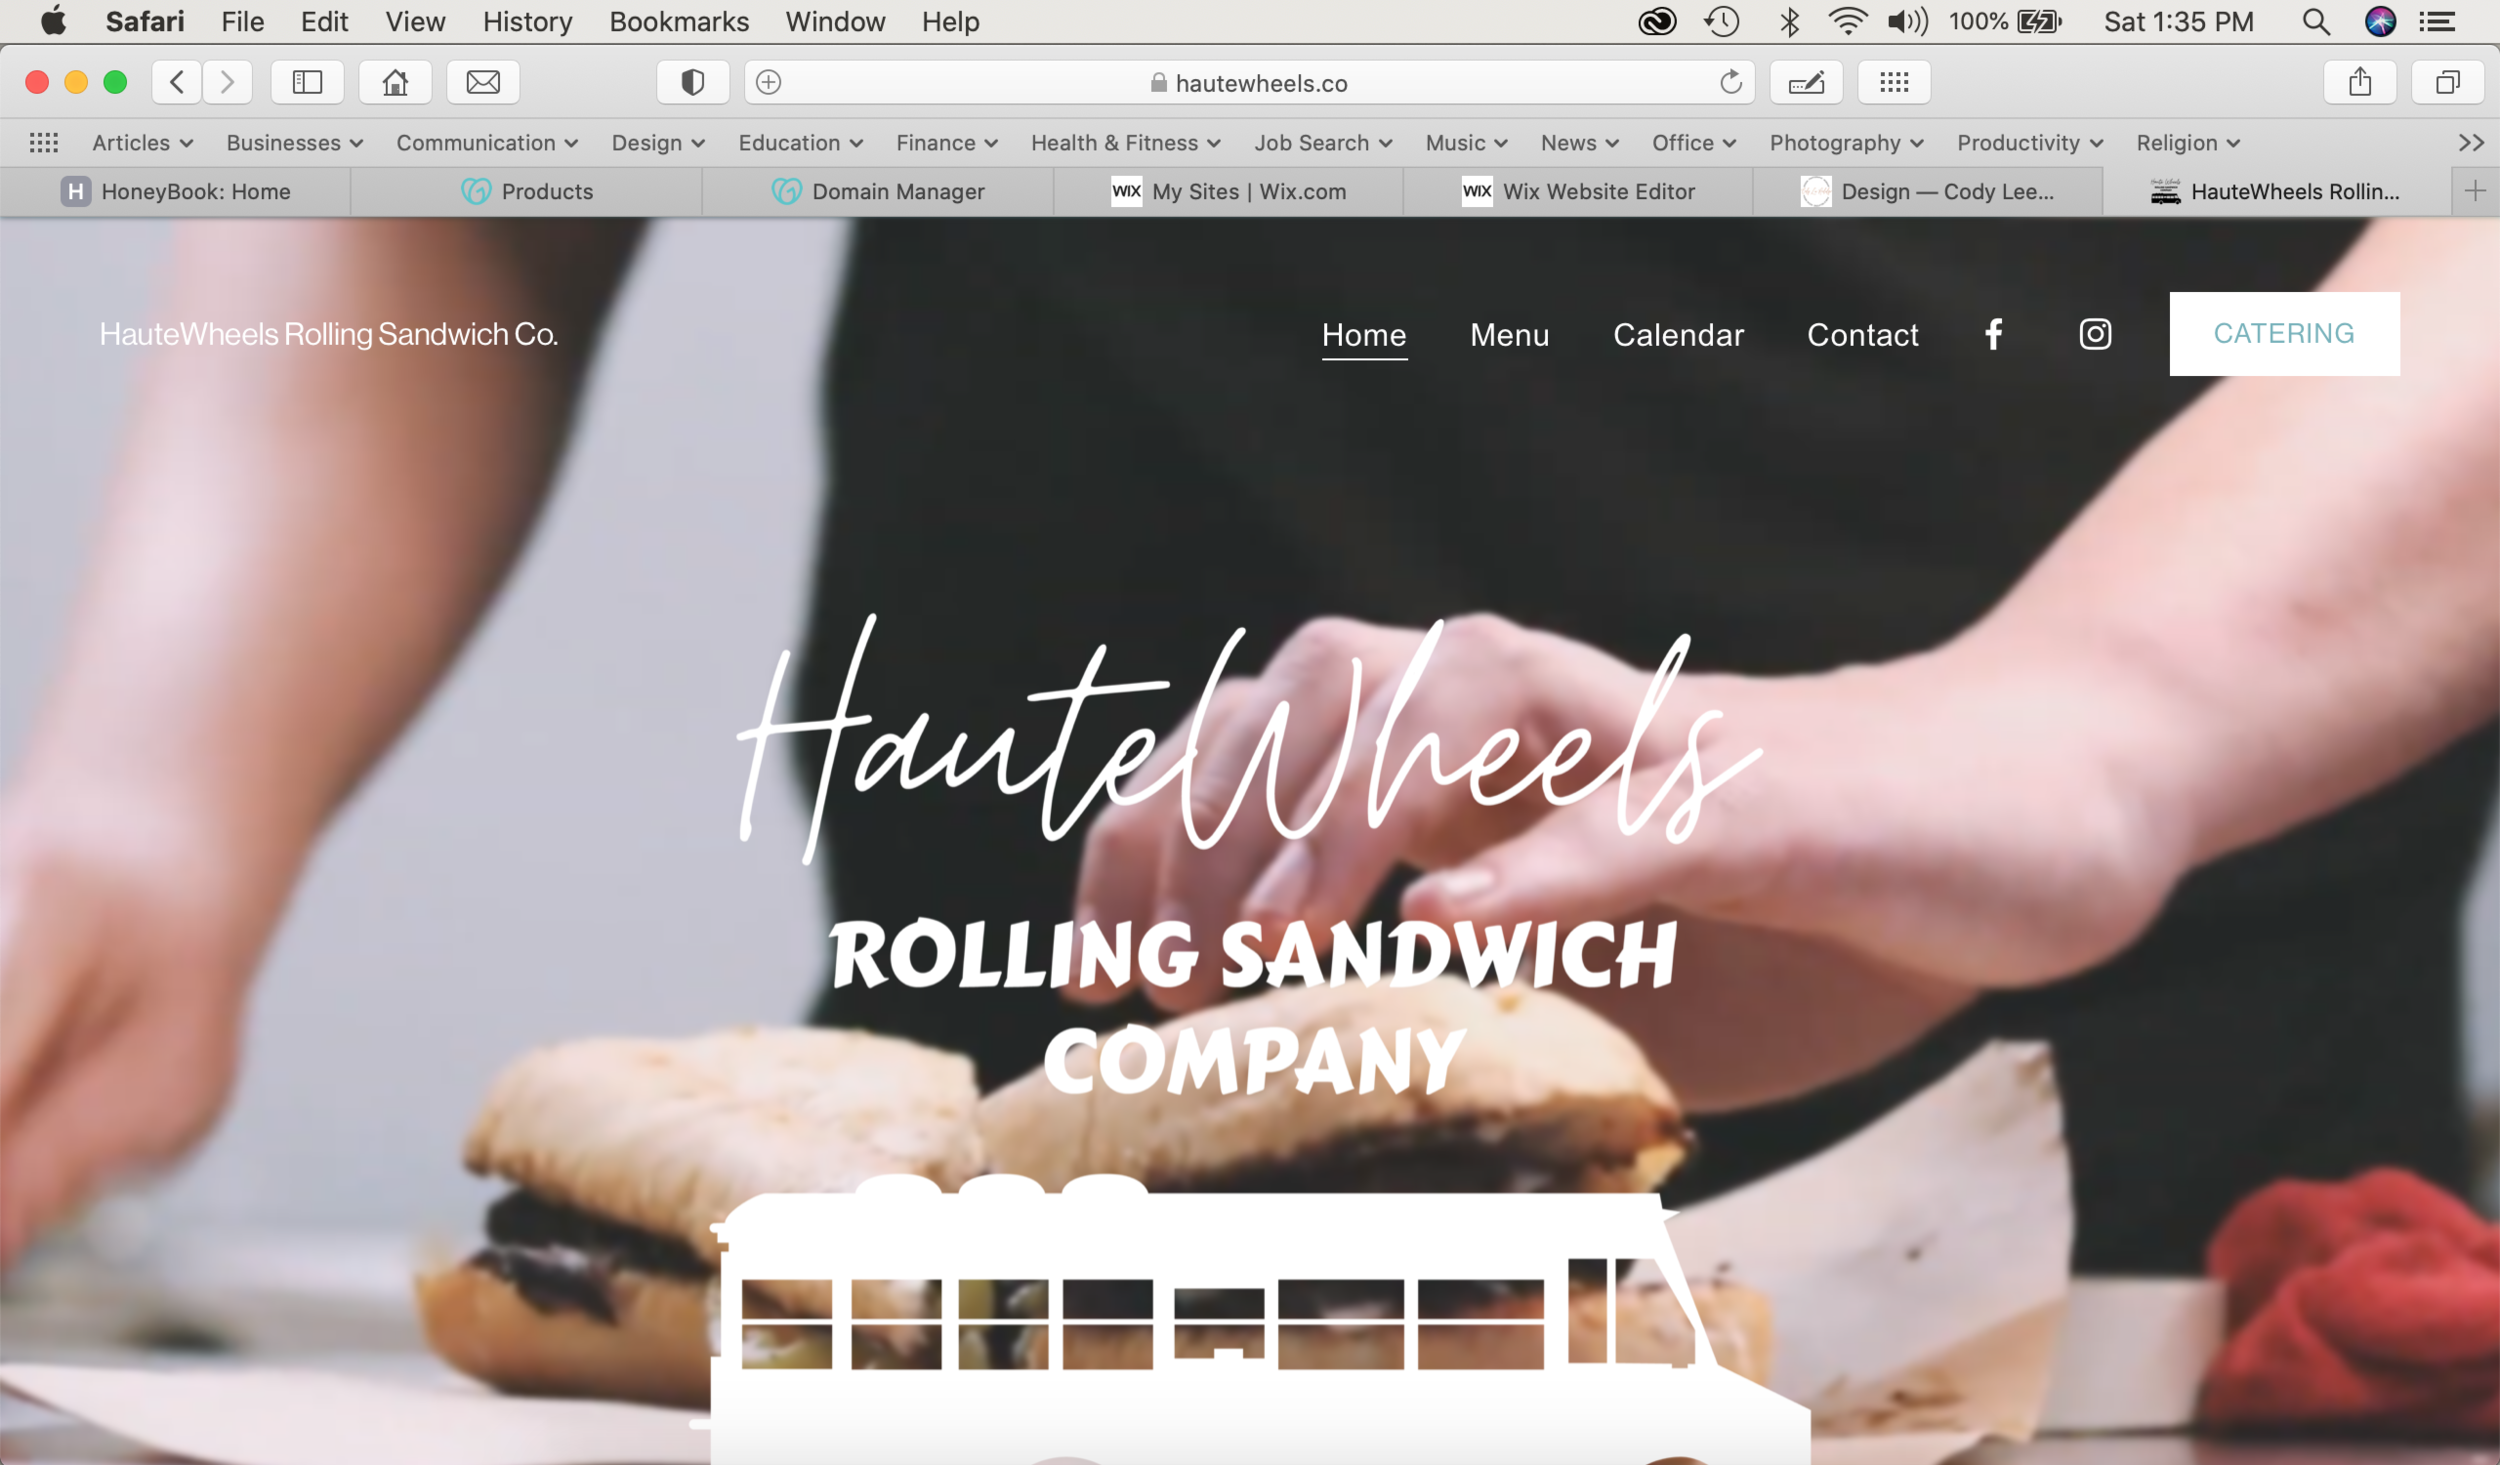 HauteWheels Rolling Sandwich Co.